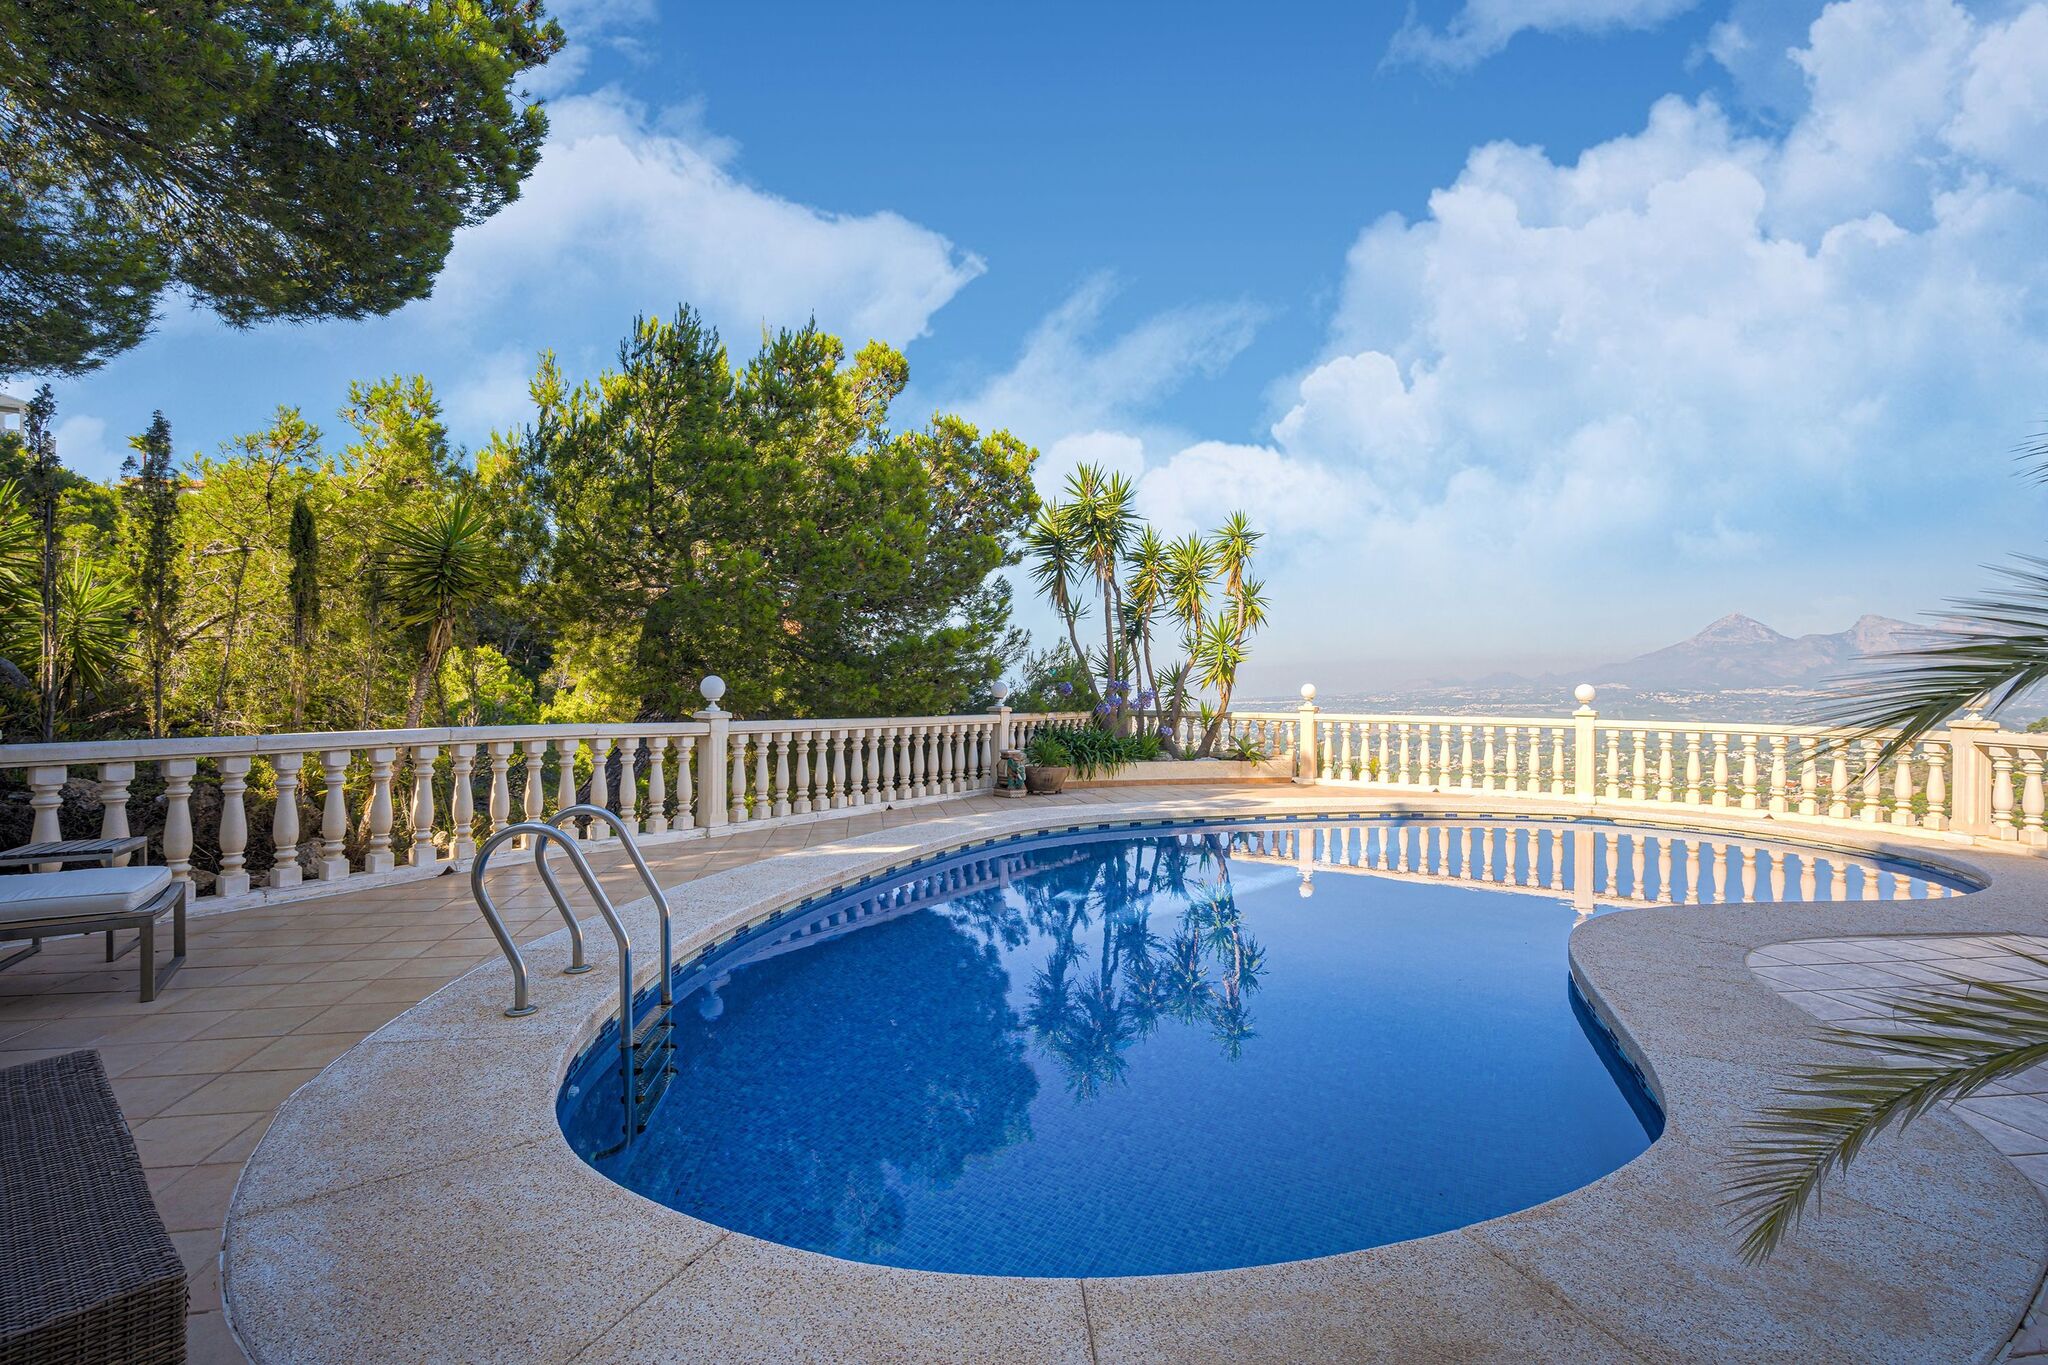 Prachtige villa in de heuvels van Altea met privézwembad